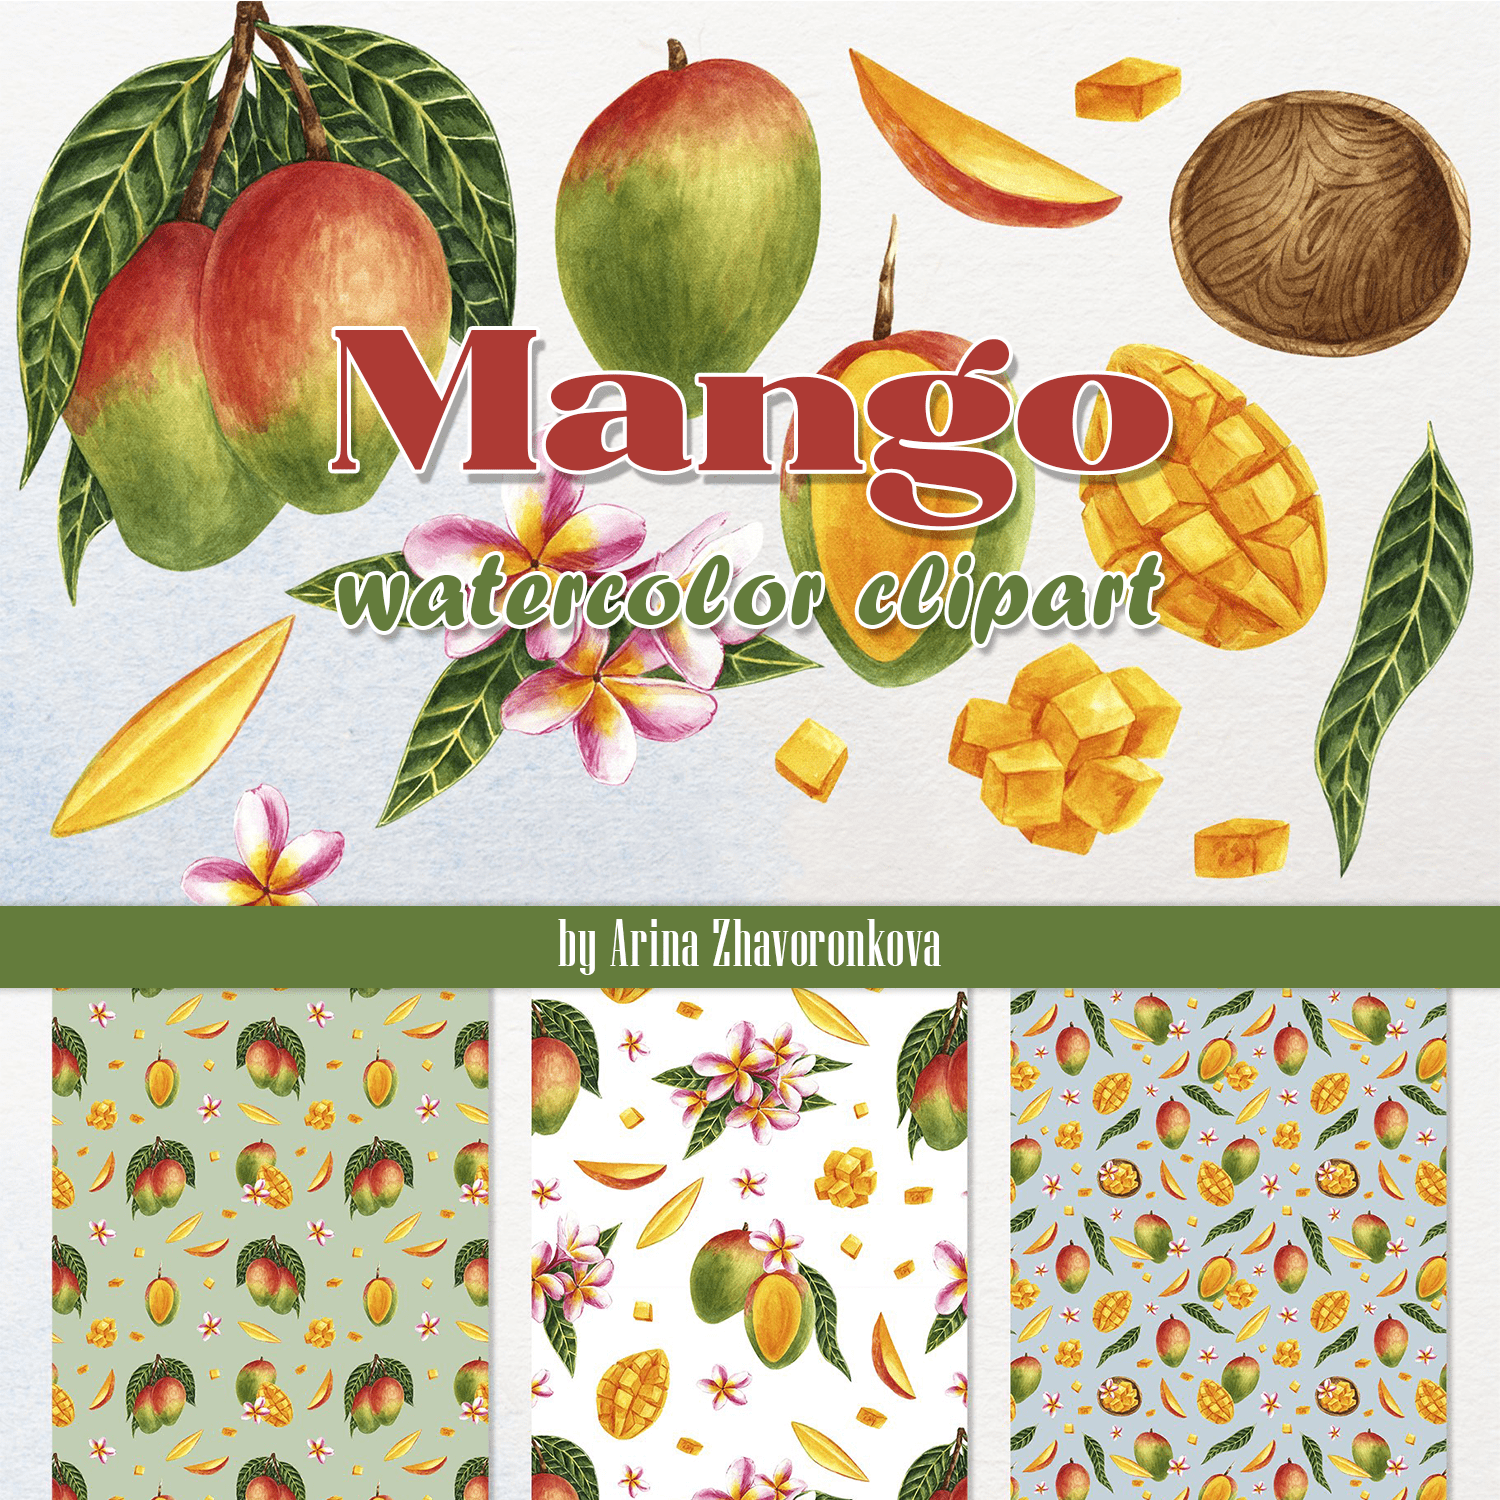 Mango watercolor clipart created by Arina Zhavoronkova.